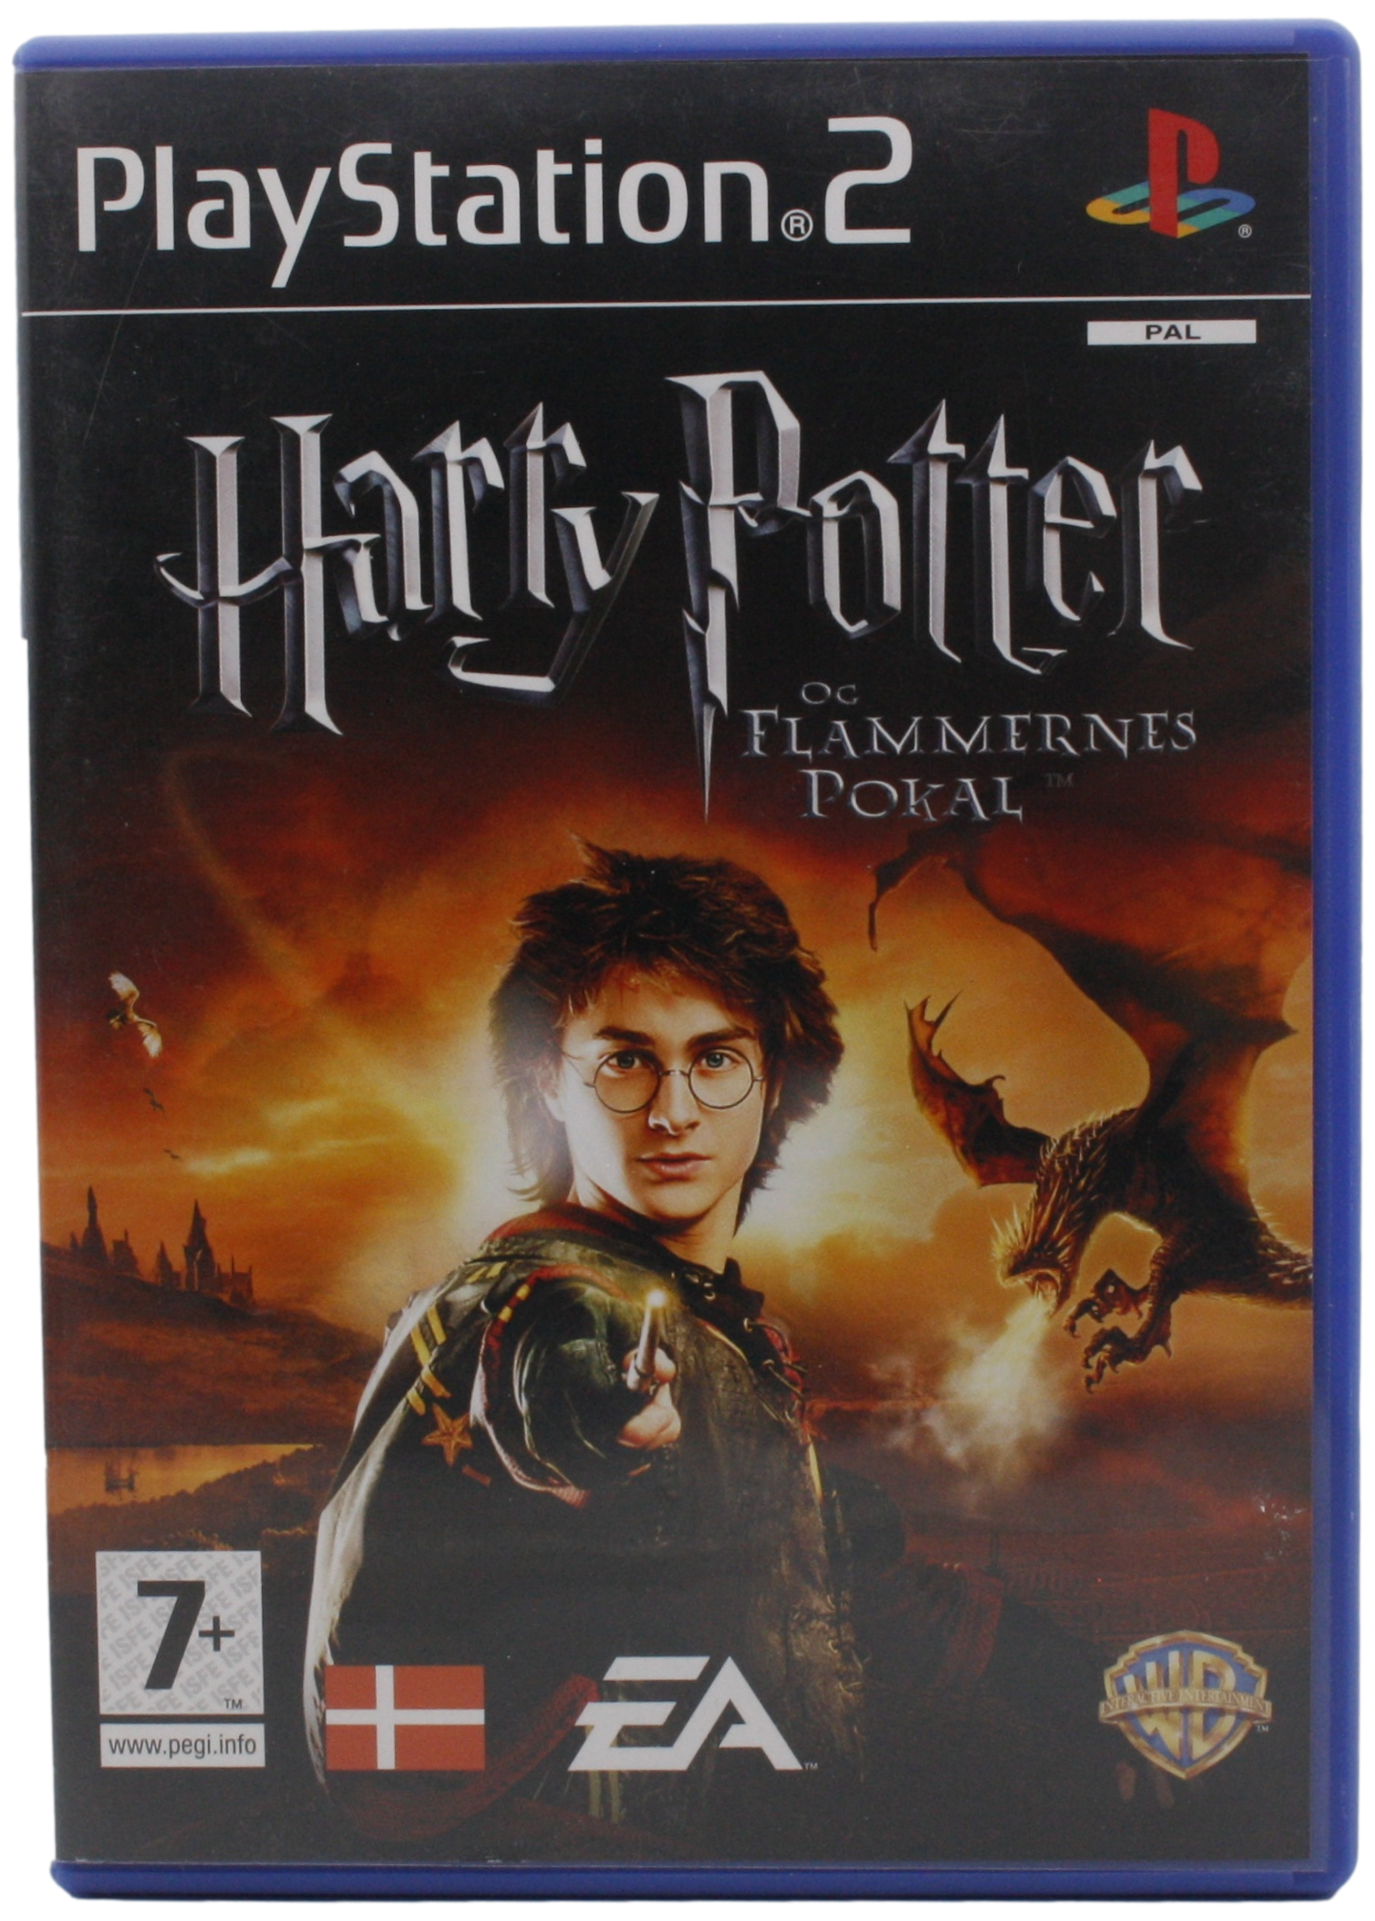 Harry Potter og Flammernes Pokal (PS2)